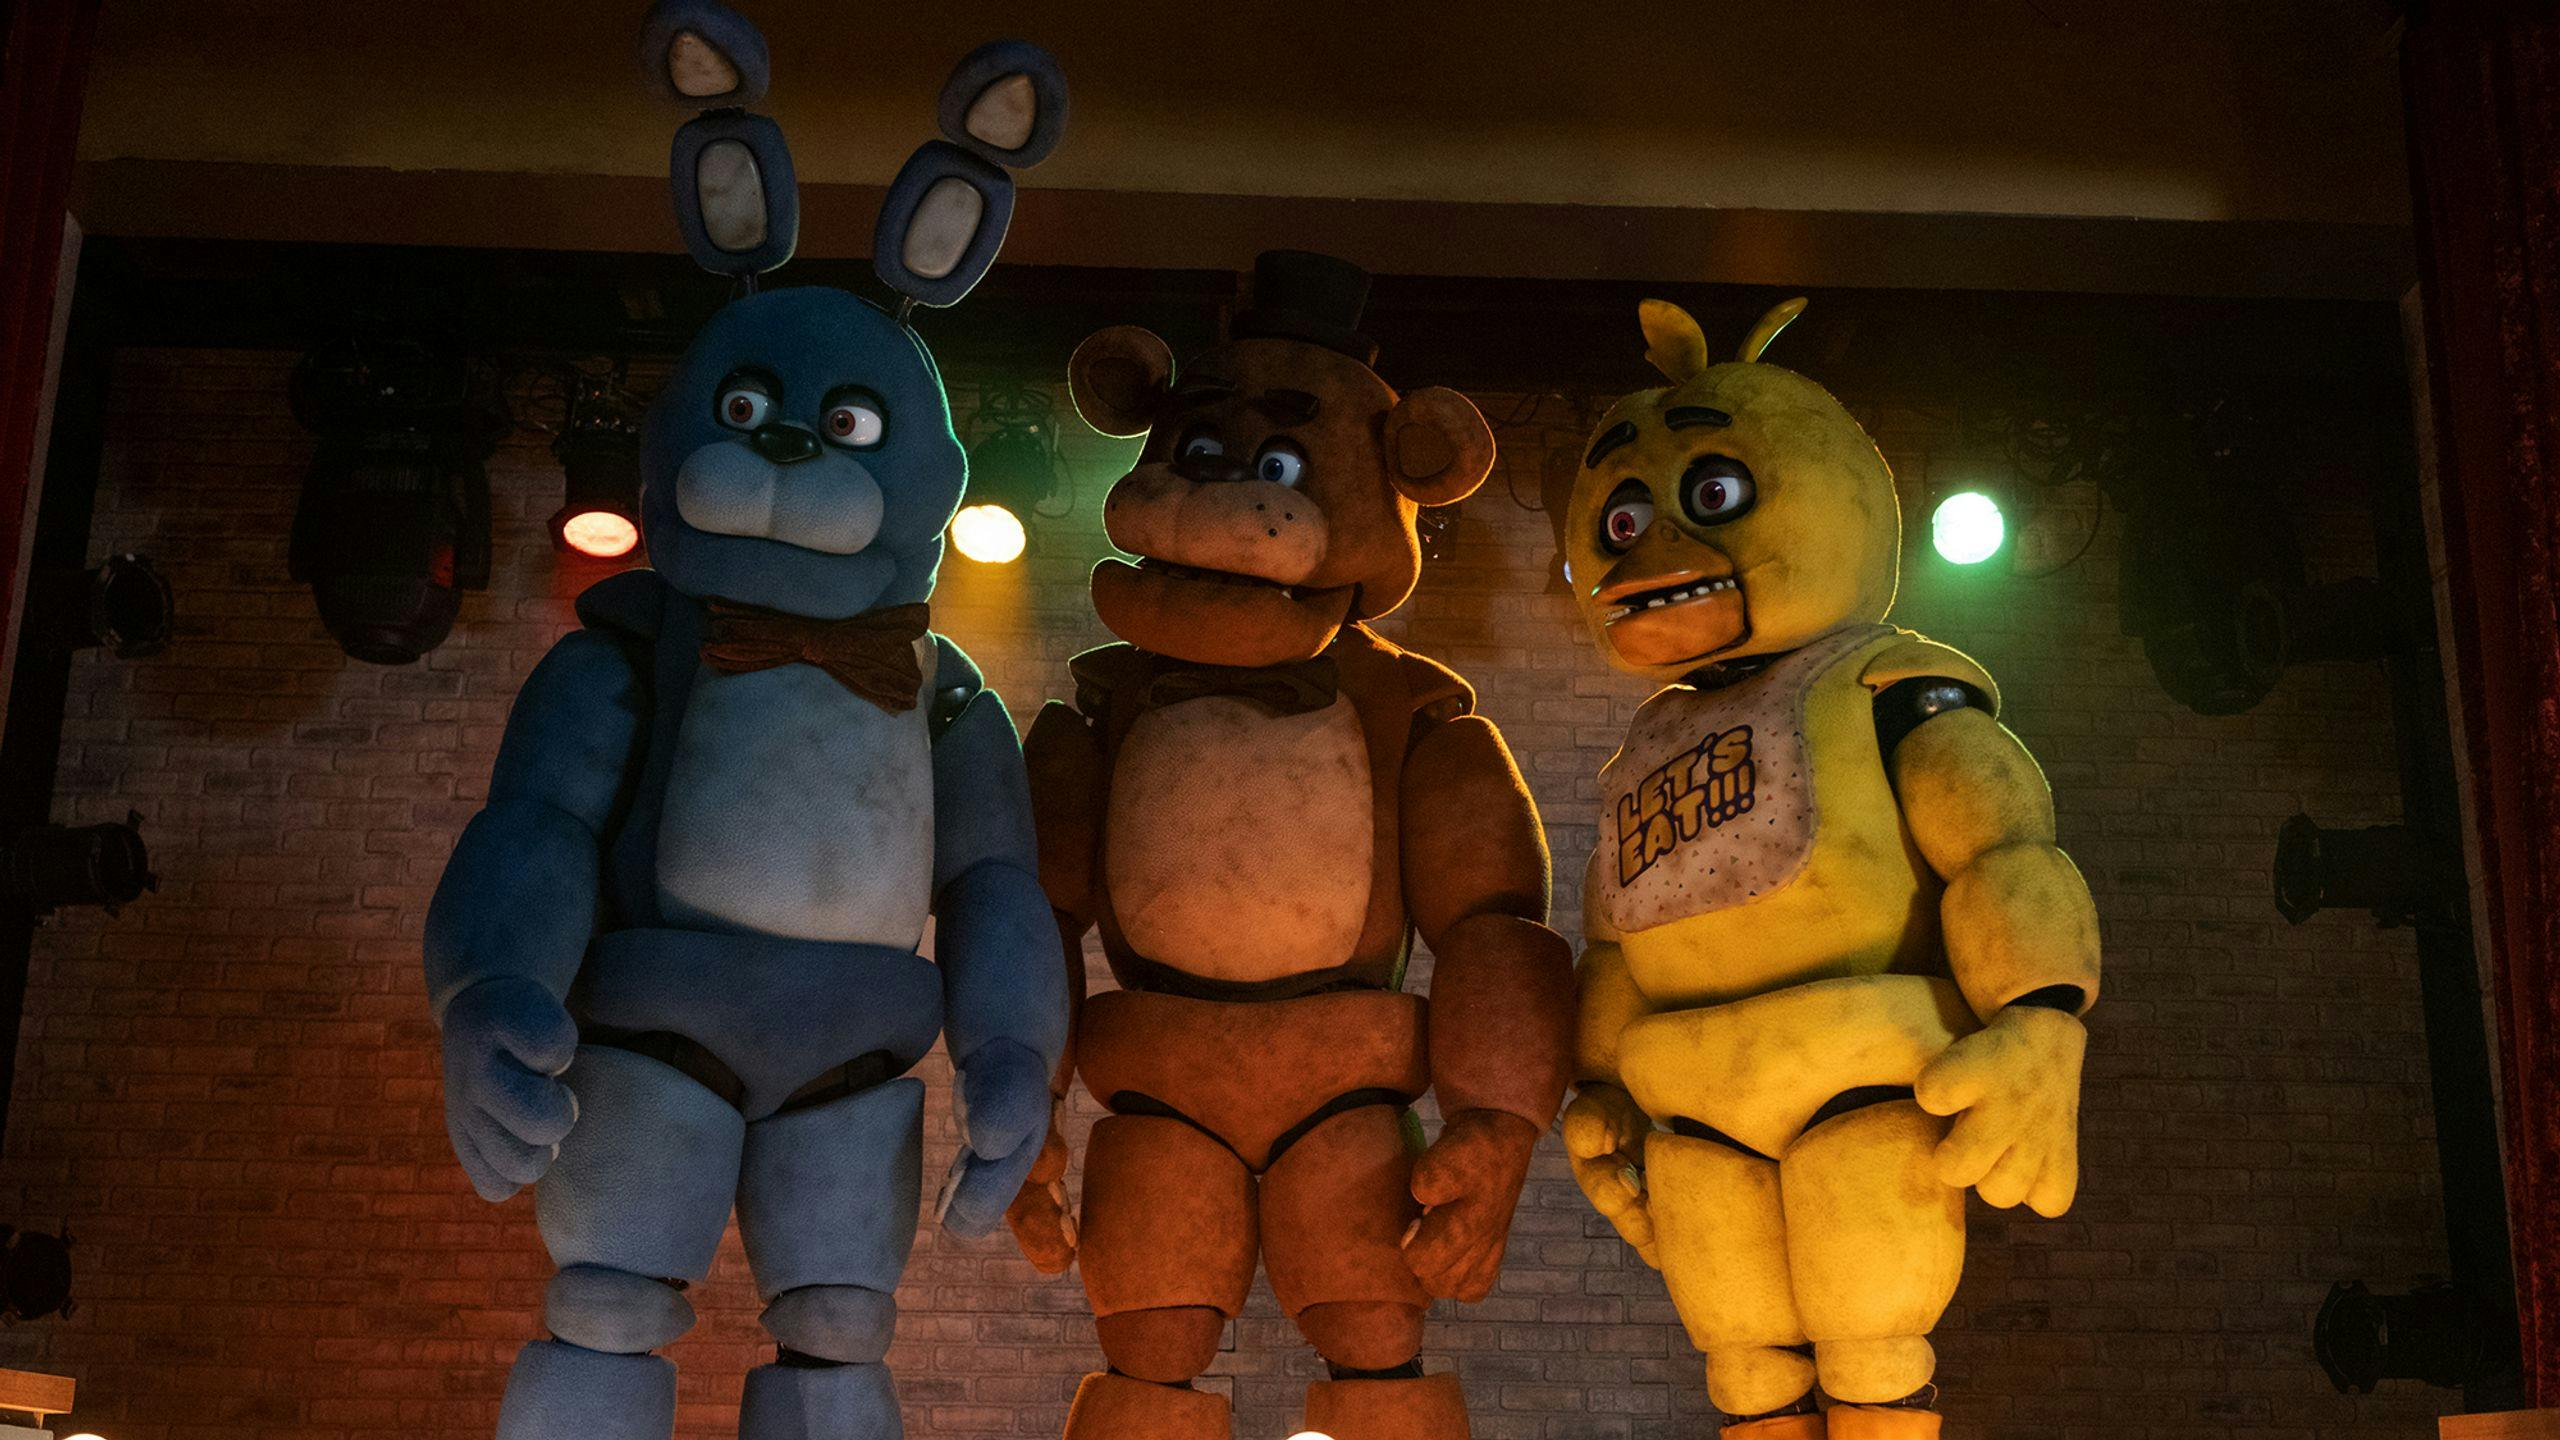 Imagen de la película de terror 'Five Nights at Freddy's', donde los animatrónicos tienen malas intenciones